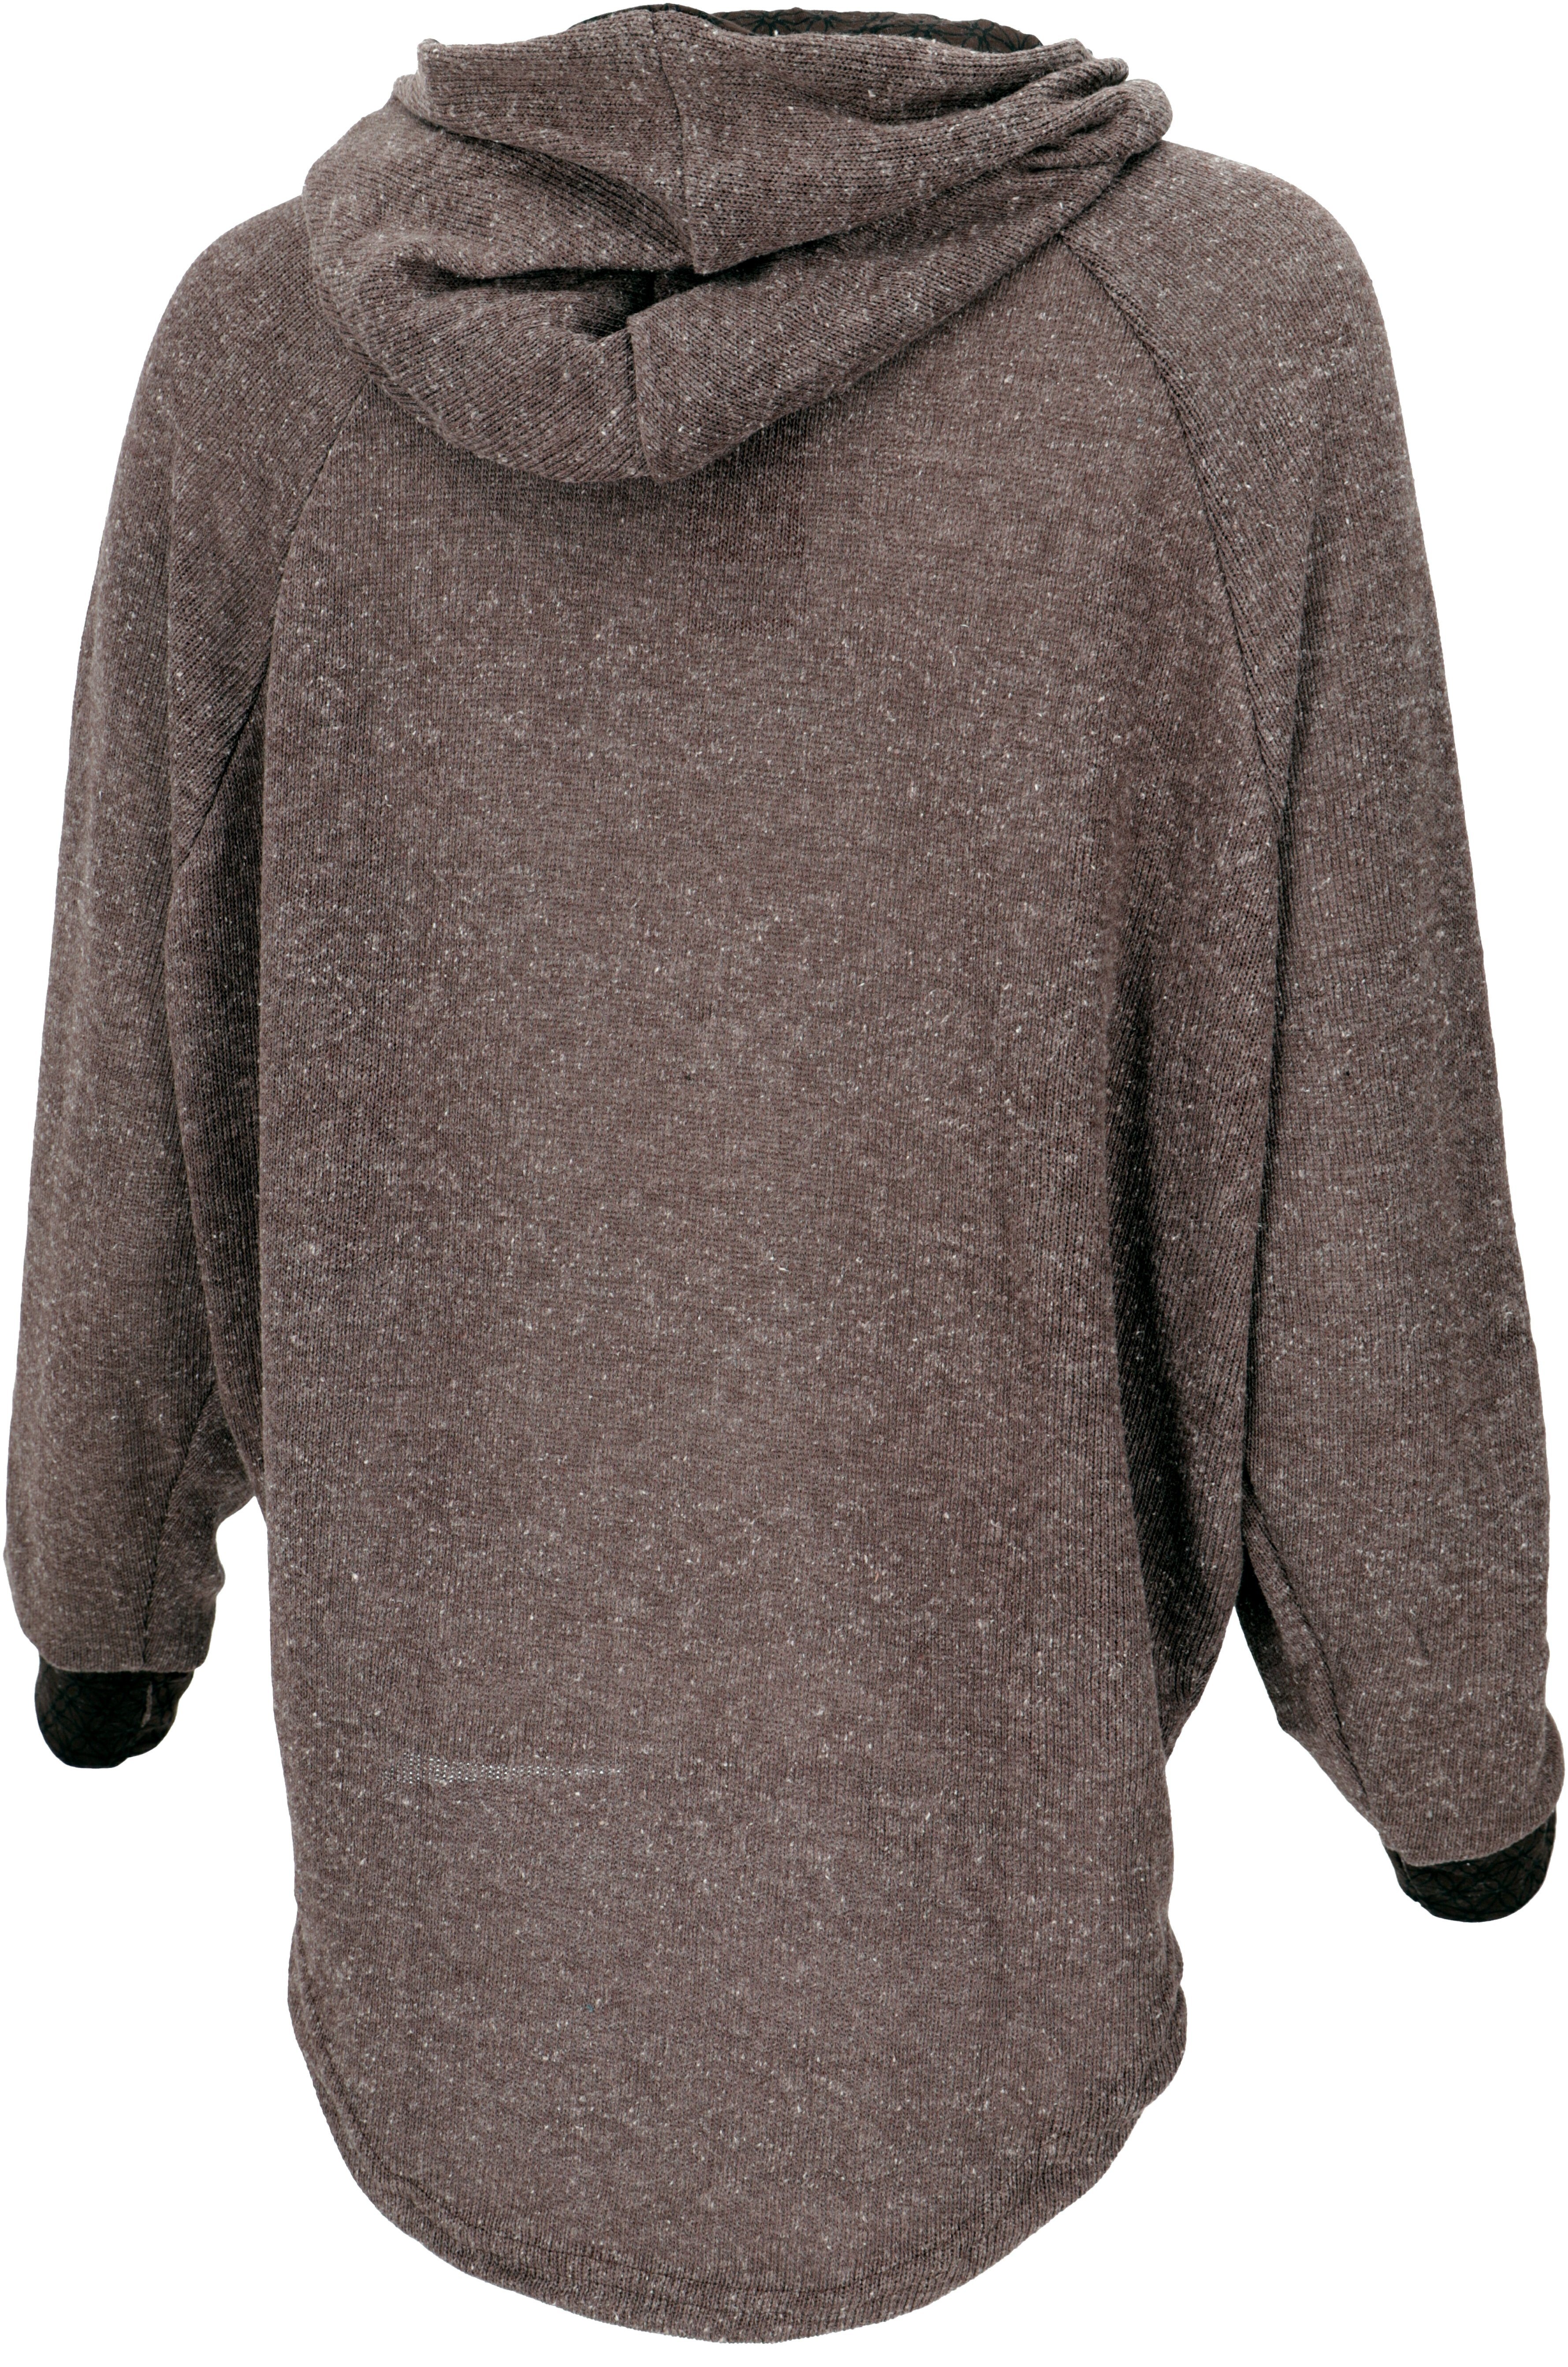 Bekleidung Kapuzenpullover Longsleeve Guru-Shop Pullover, Sweatshirt, alternative -.. Hoody, braun